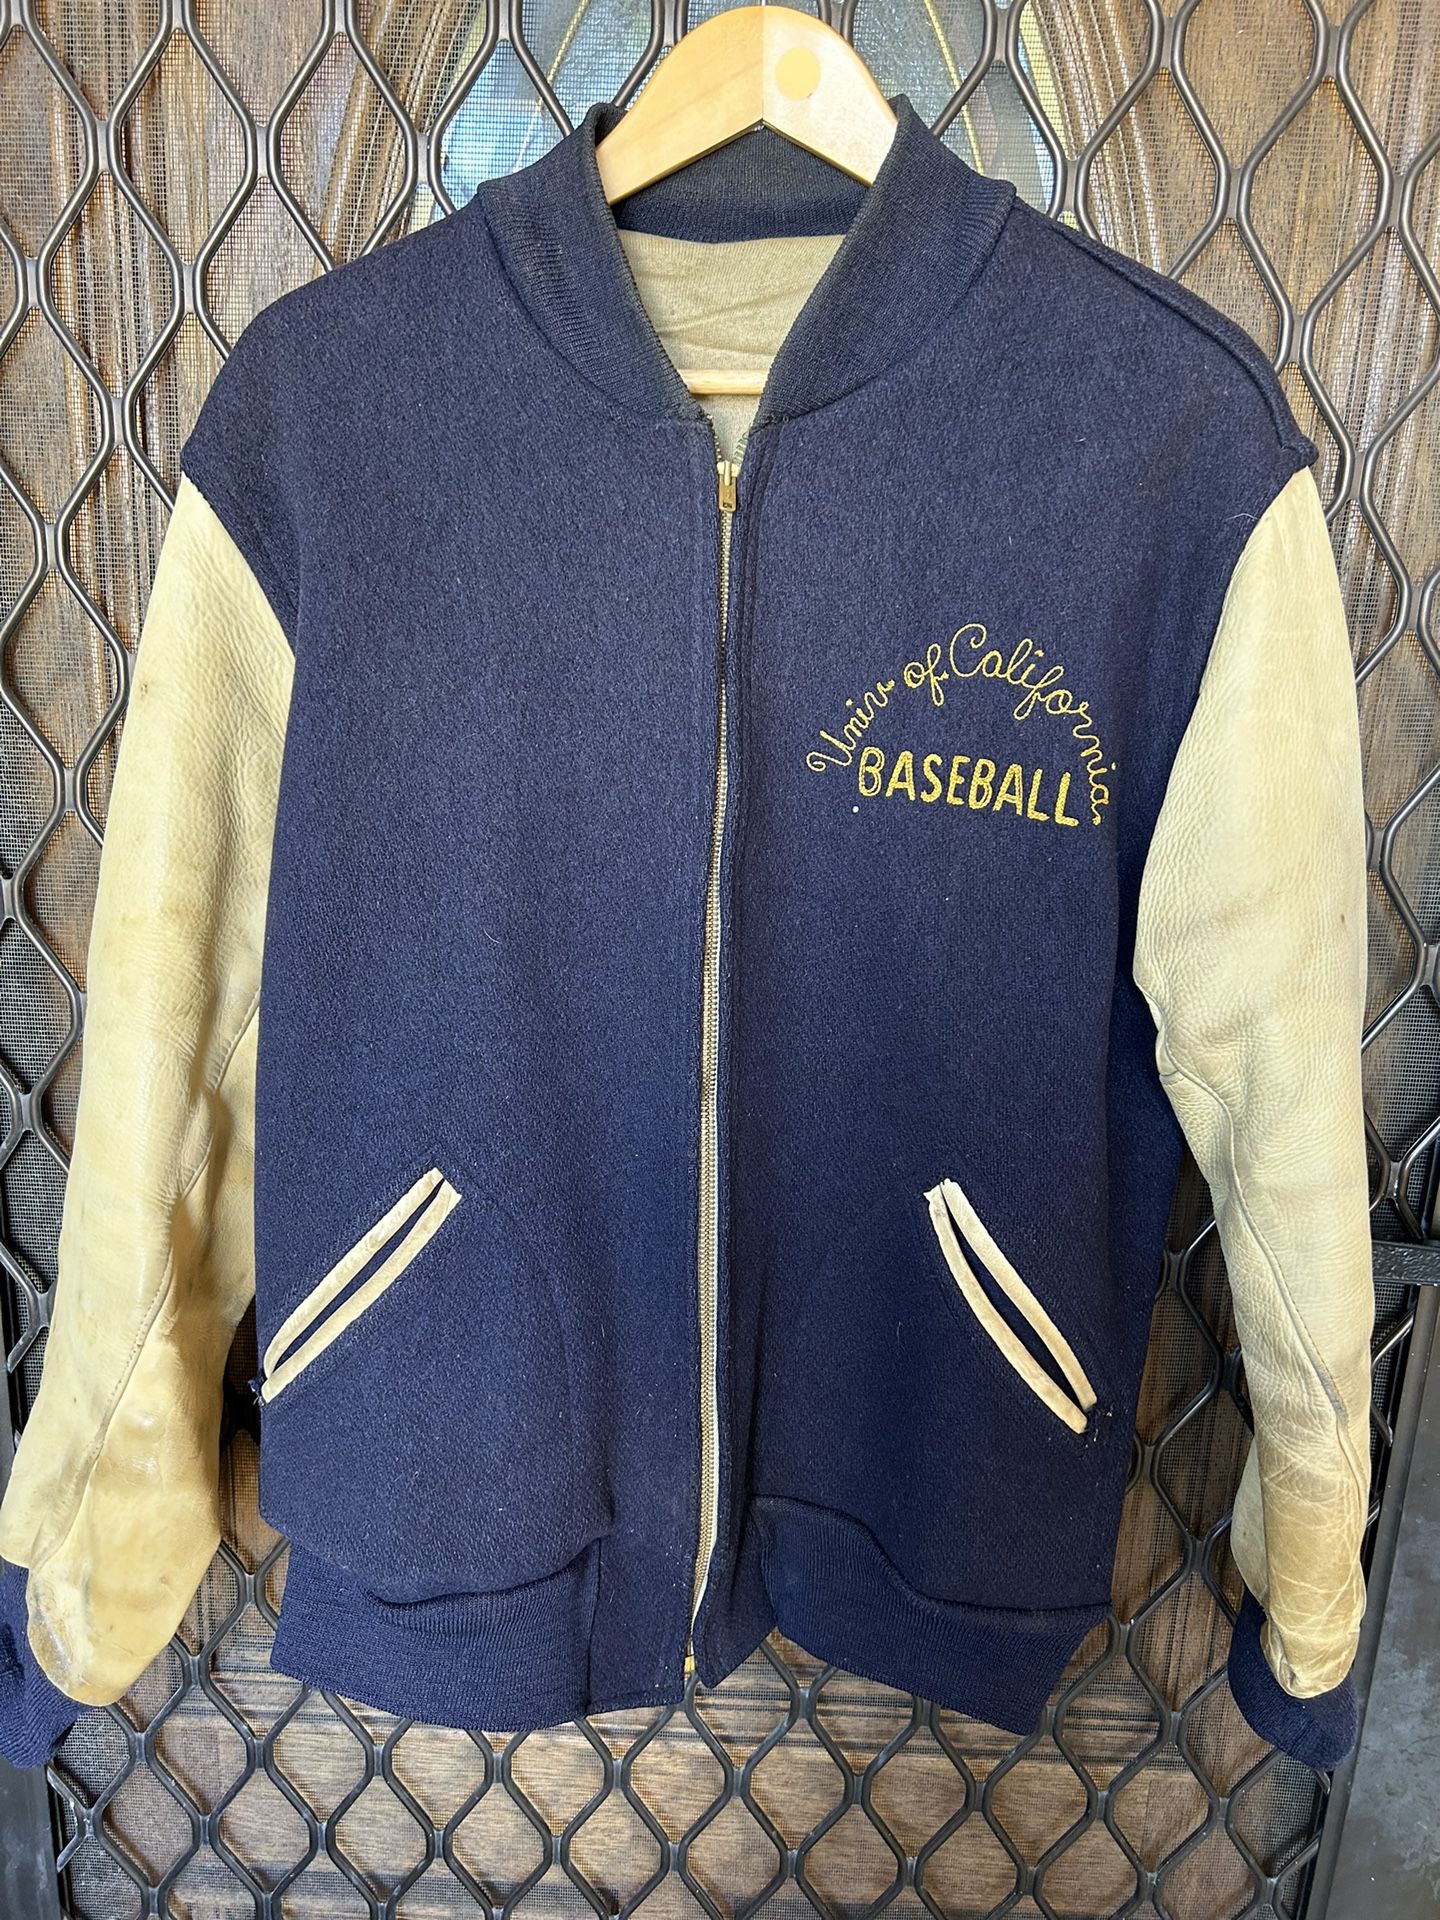 Vintage Whiting Size 44 ( Large) Varsity Letterman Jacket University Of California Baseball